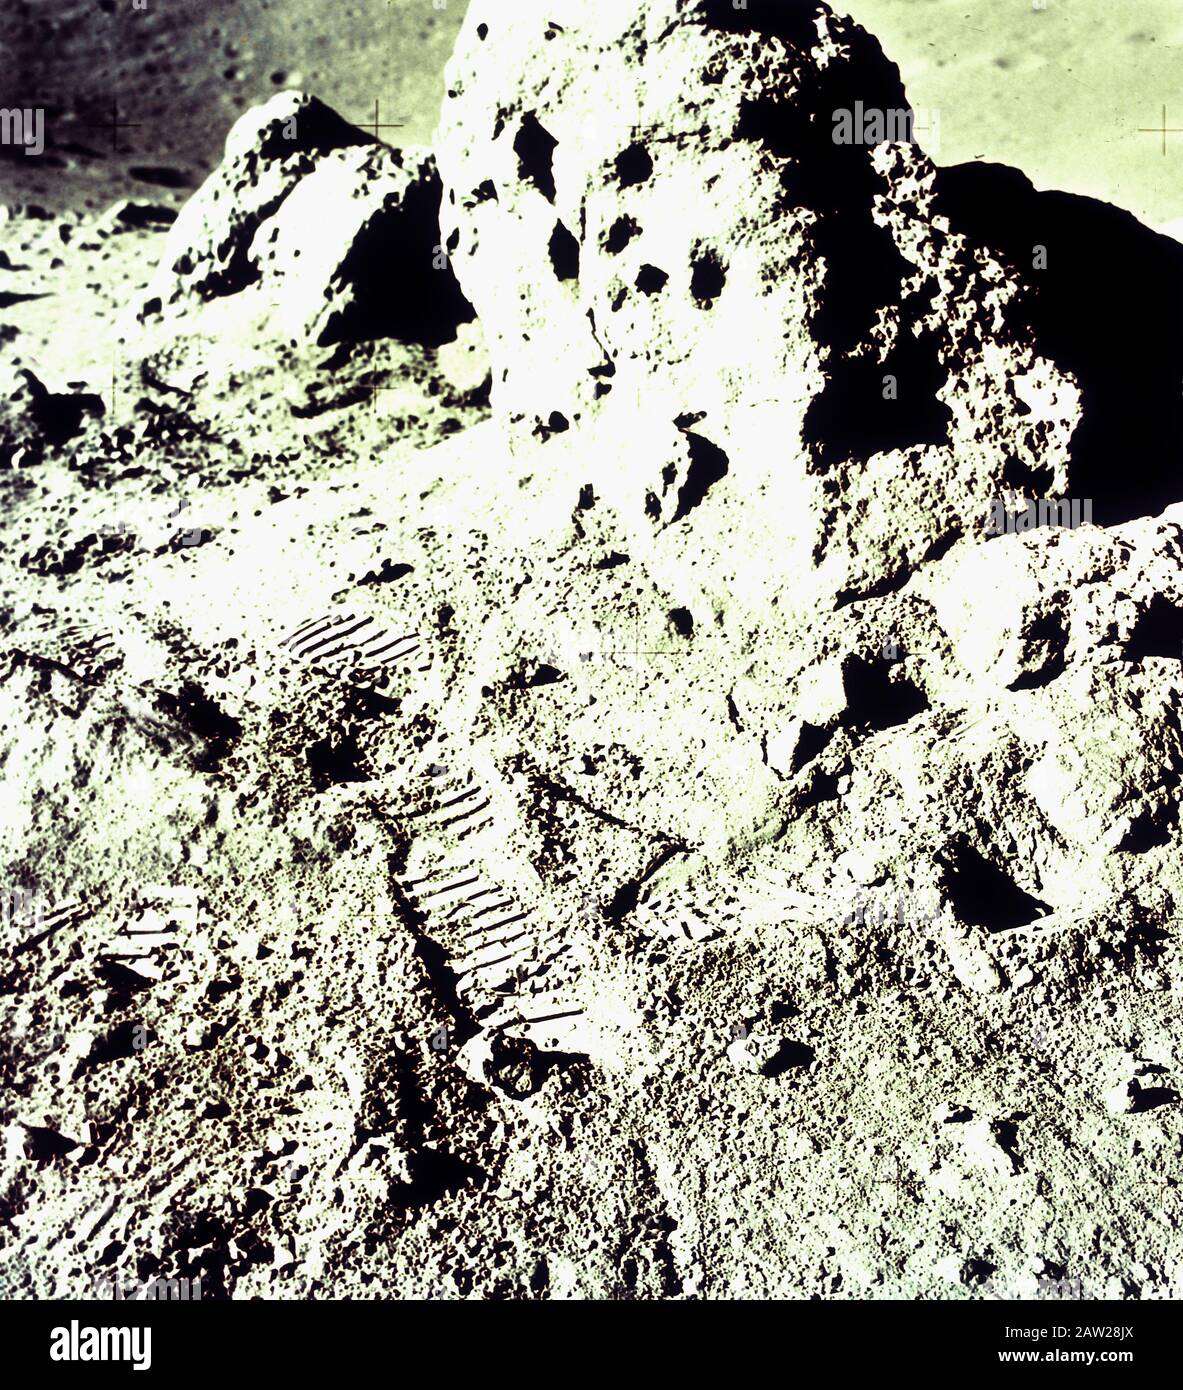 Fußabdrücke auf Mondgesteinen nach der Landung auf dem Mond von apollo 15, Juli 1971 Stockfoto